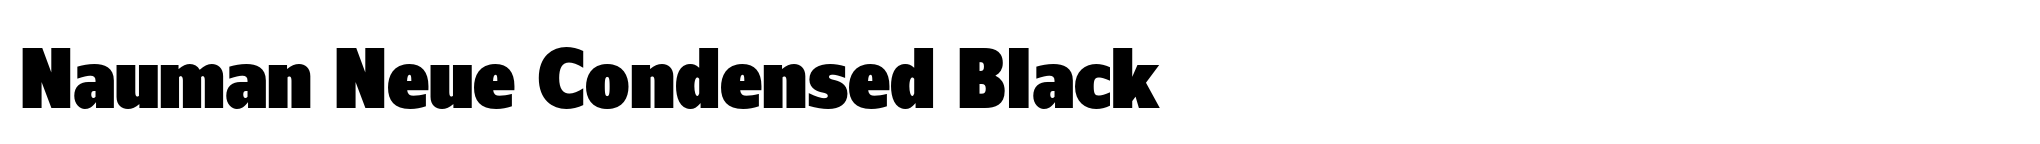 Nauman Neue Condensed Black image